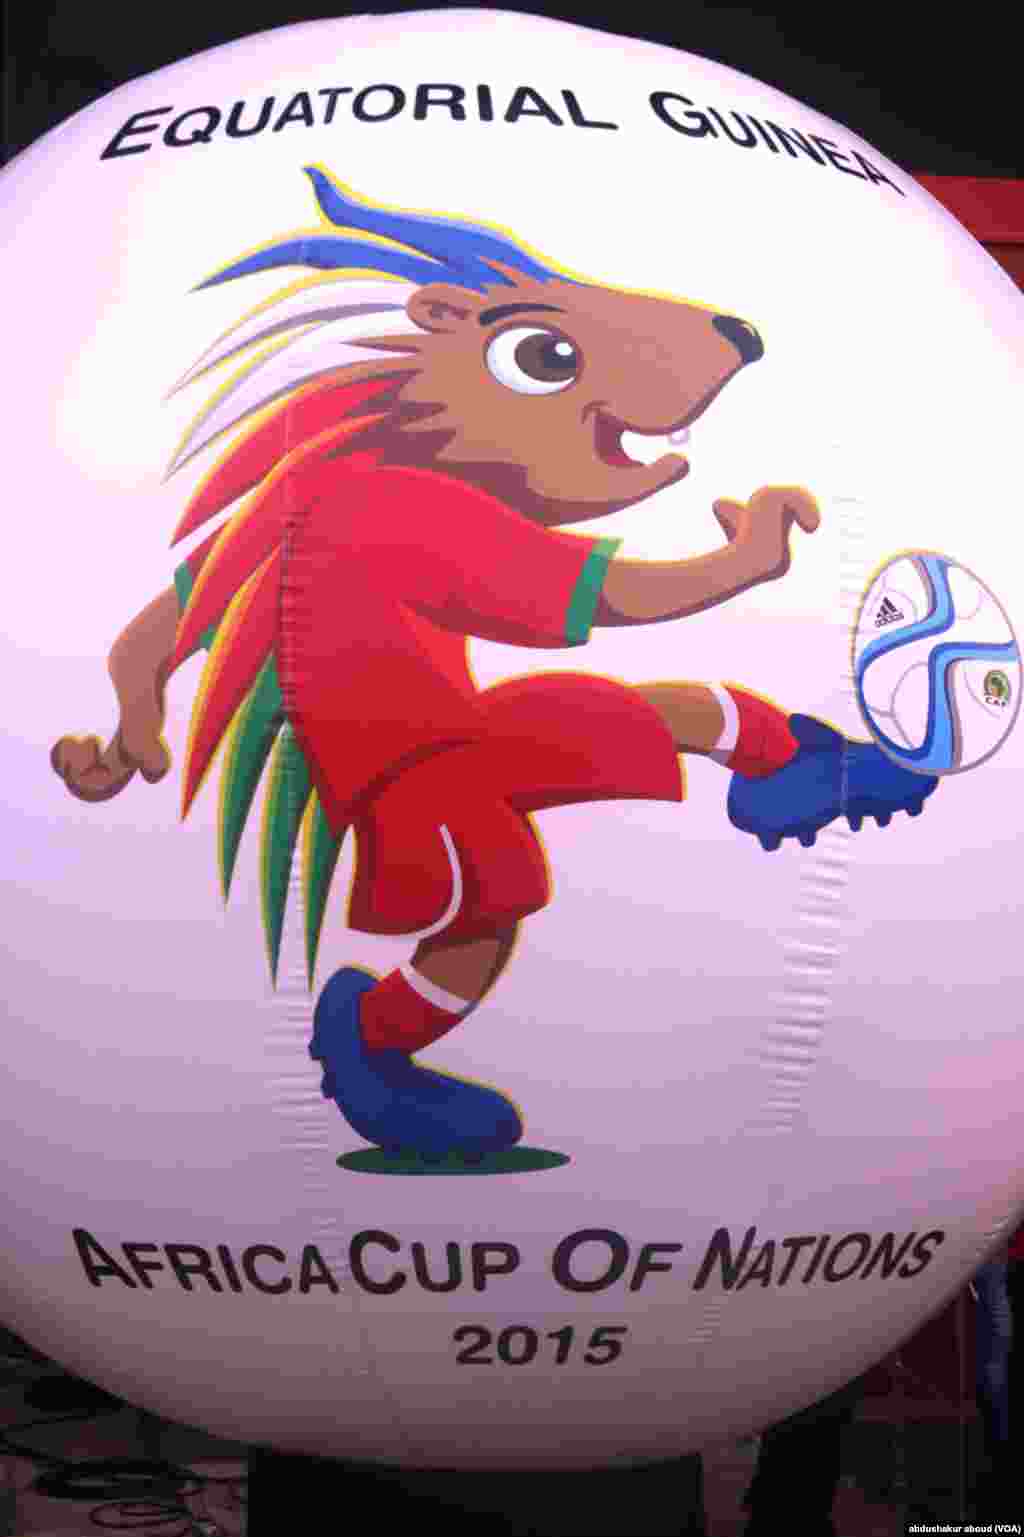 La mascott de la CAN 2015, Chukchuk